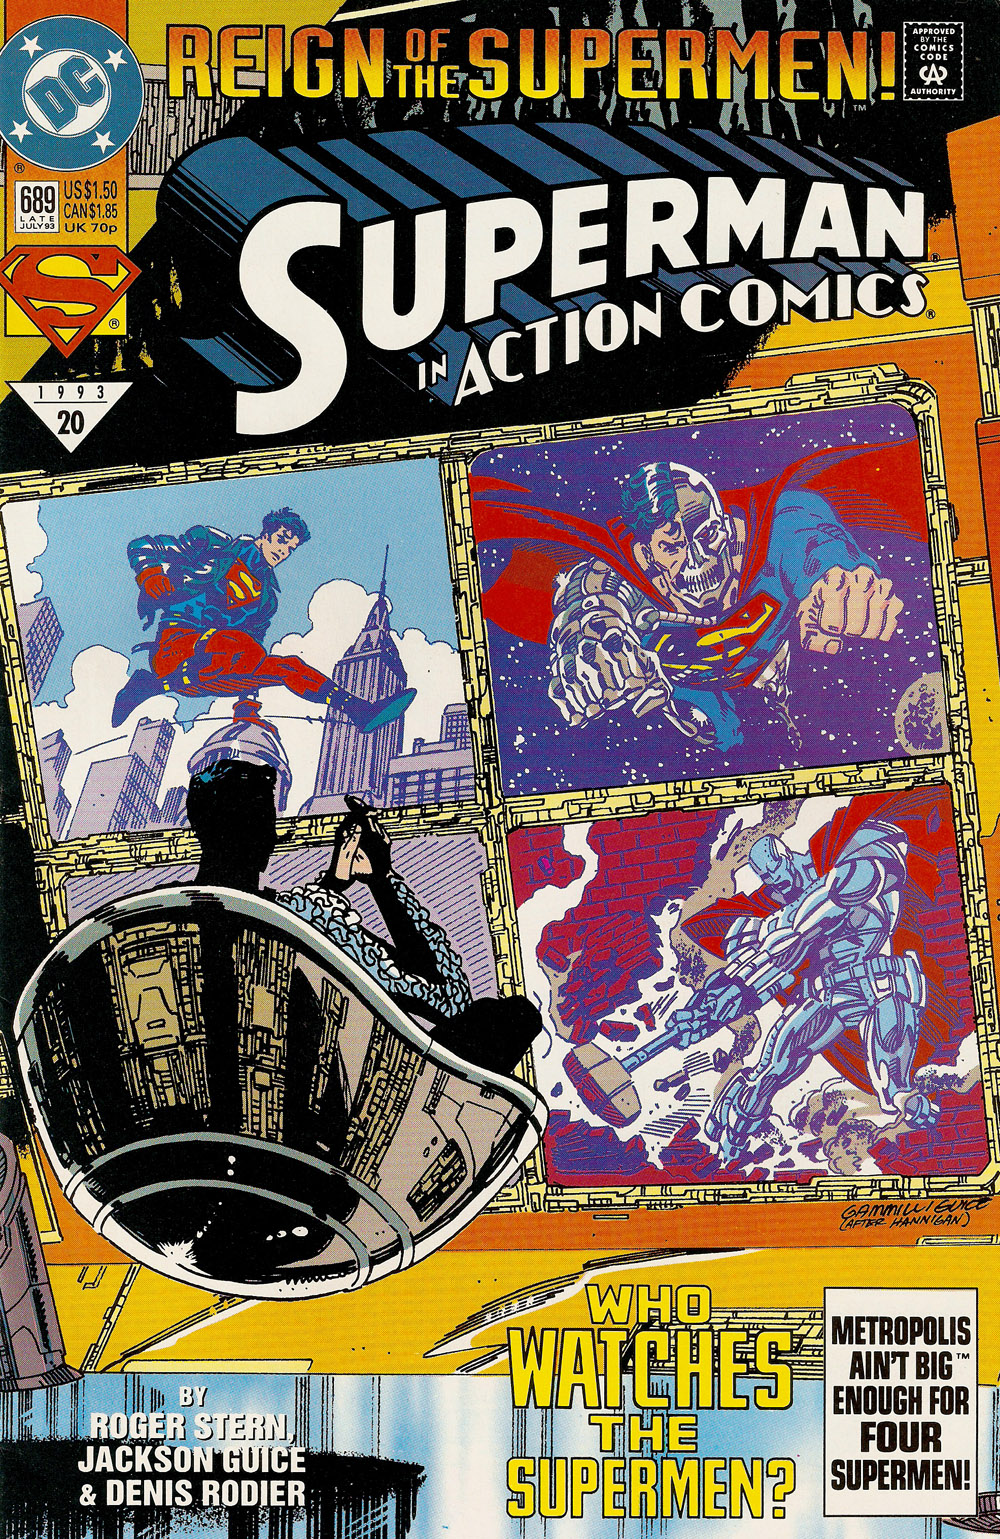 Action Comics Vol. 1 #689